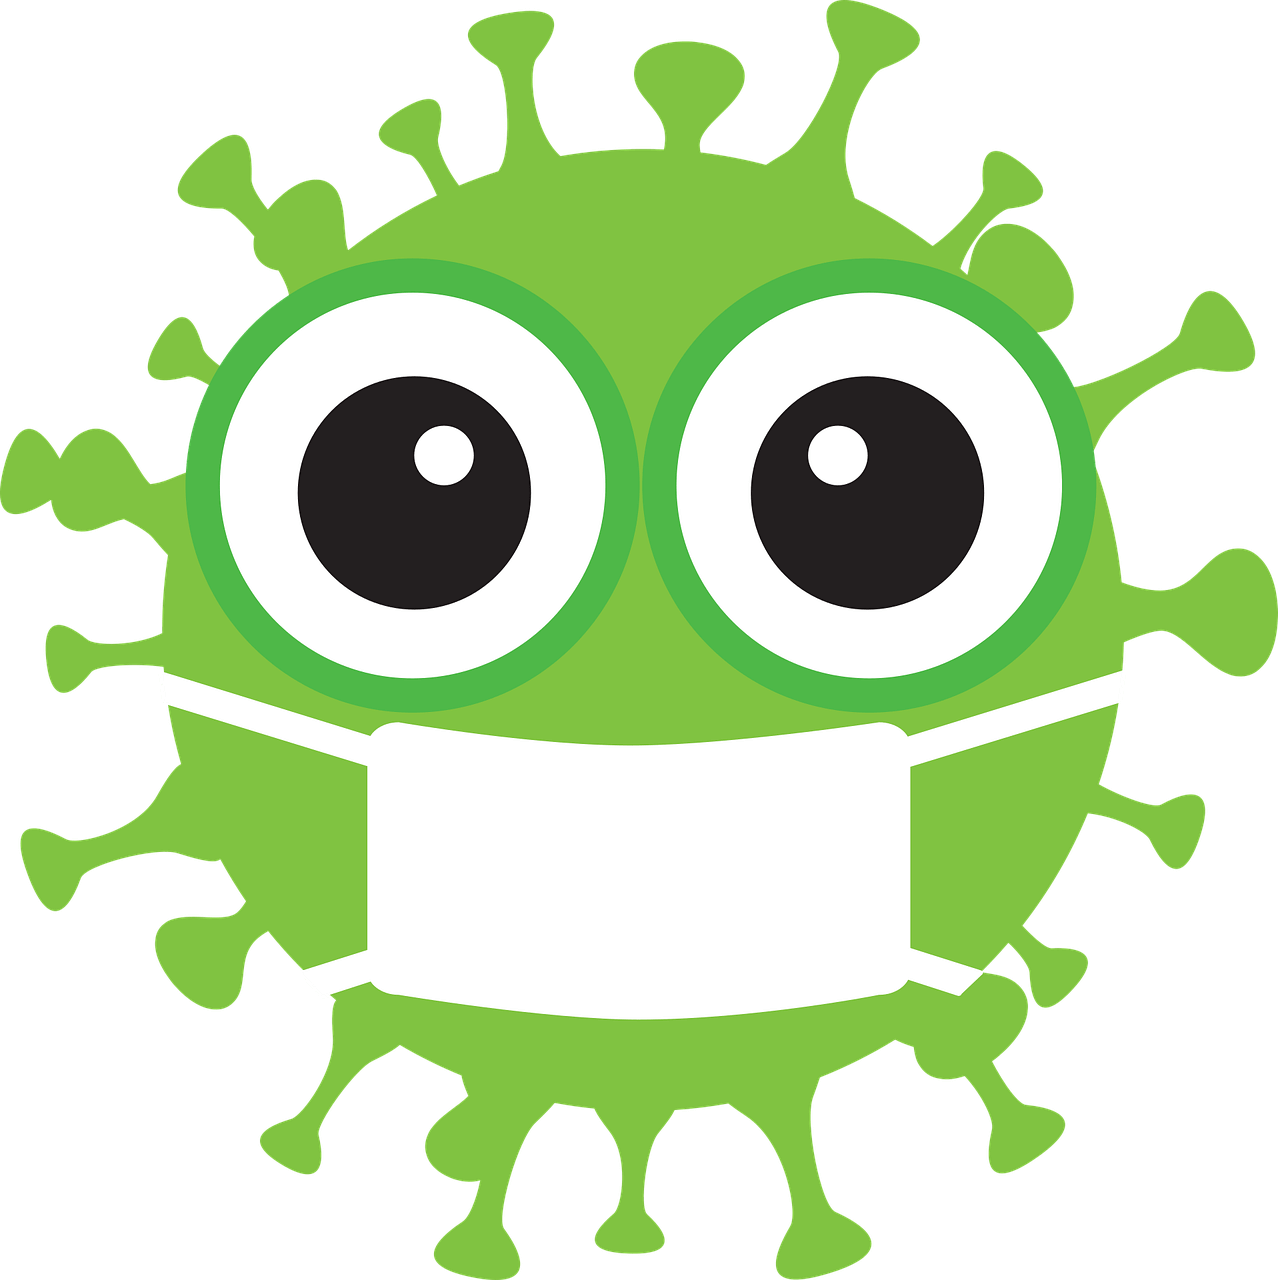 en tecknad figur som ett virus med ögon och munskydd